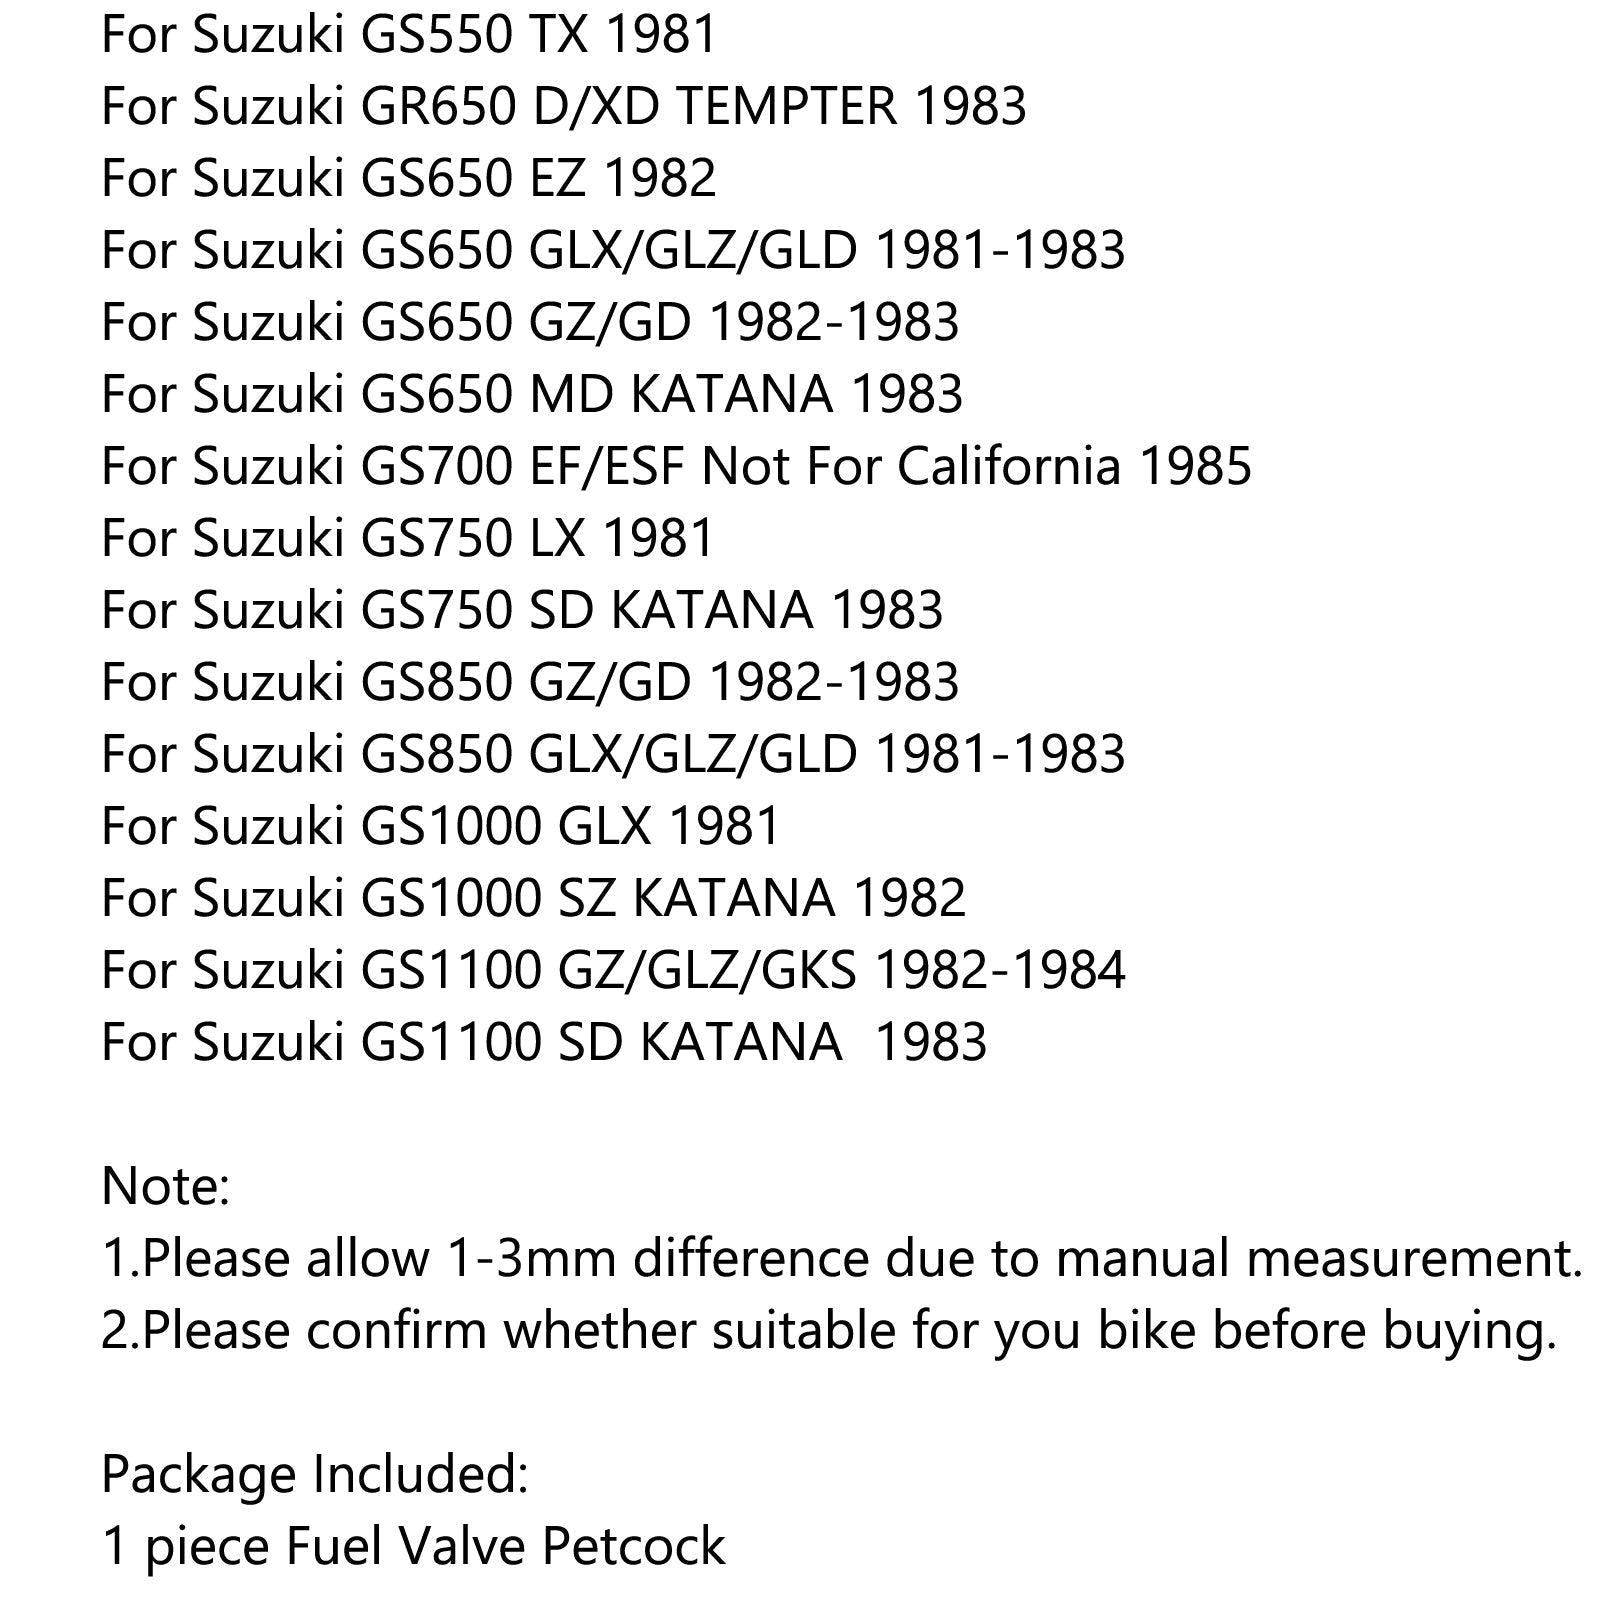 Vanne d'essence à essence Petcock 44300-45011 pour Suzuki GS300 GS450 GS550 GS650 générique